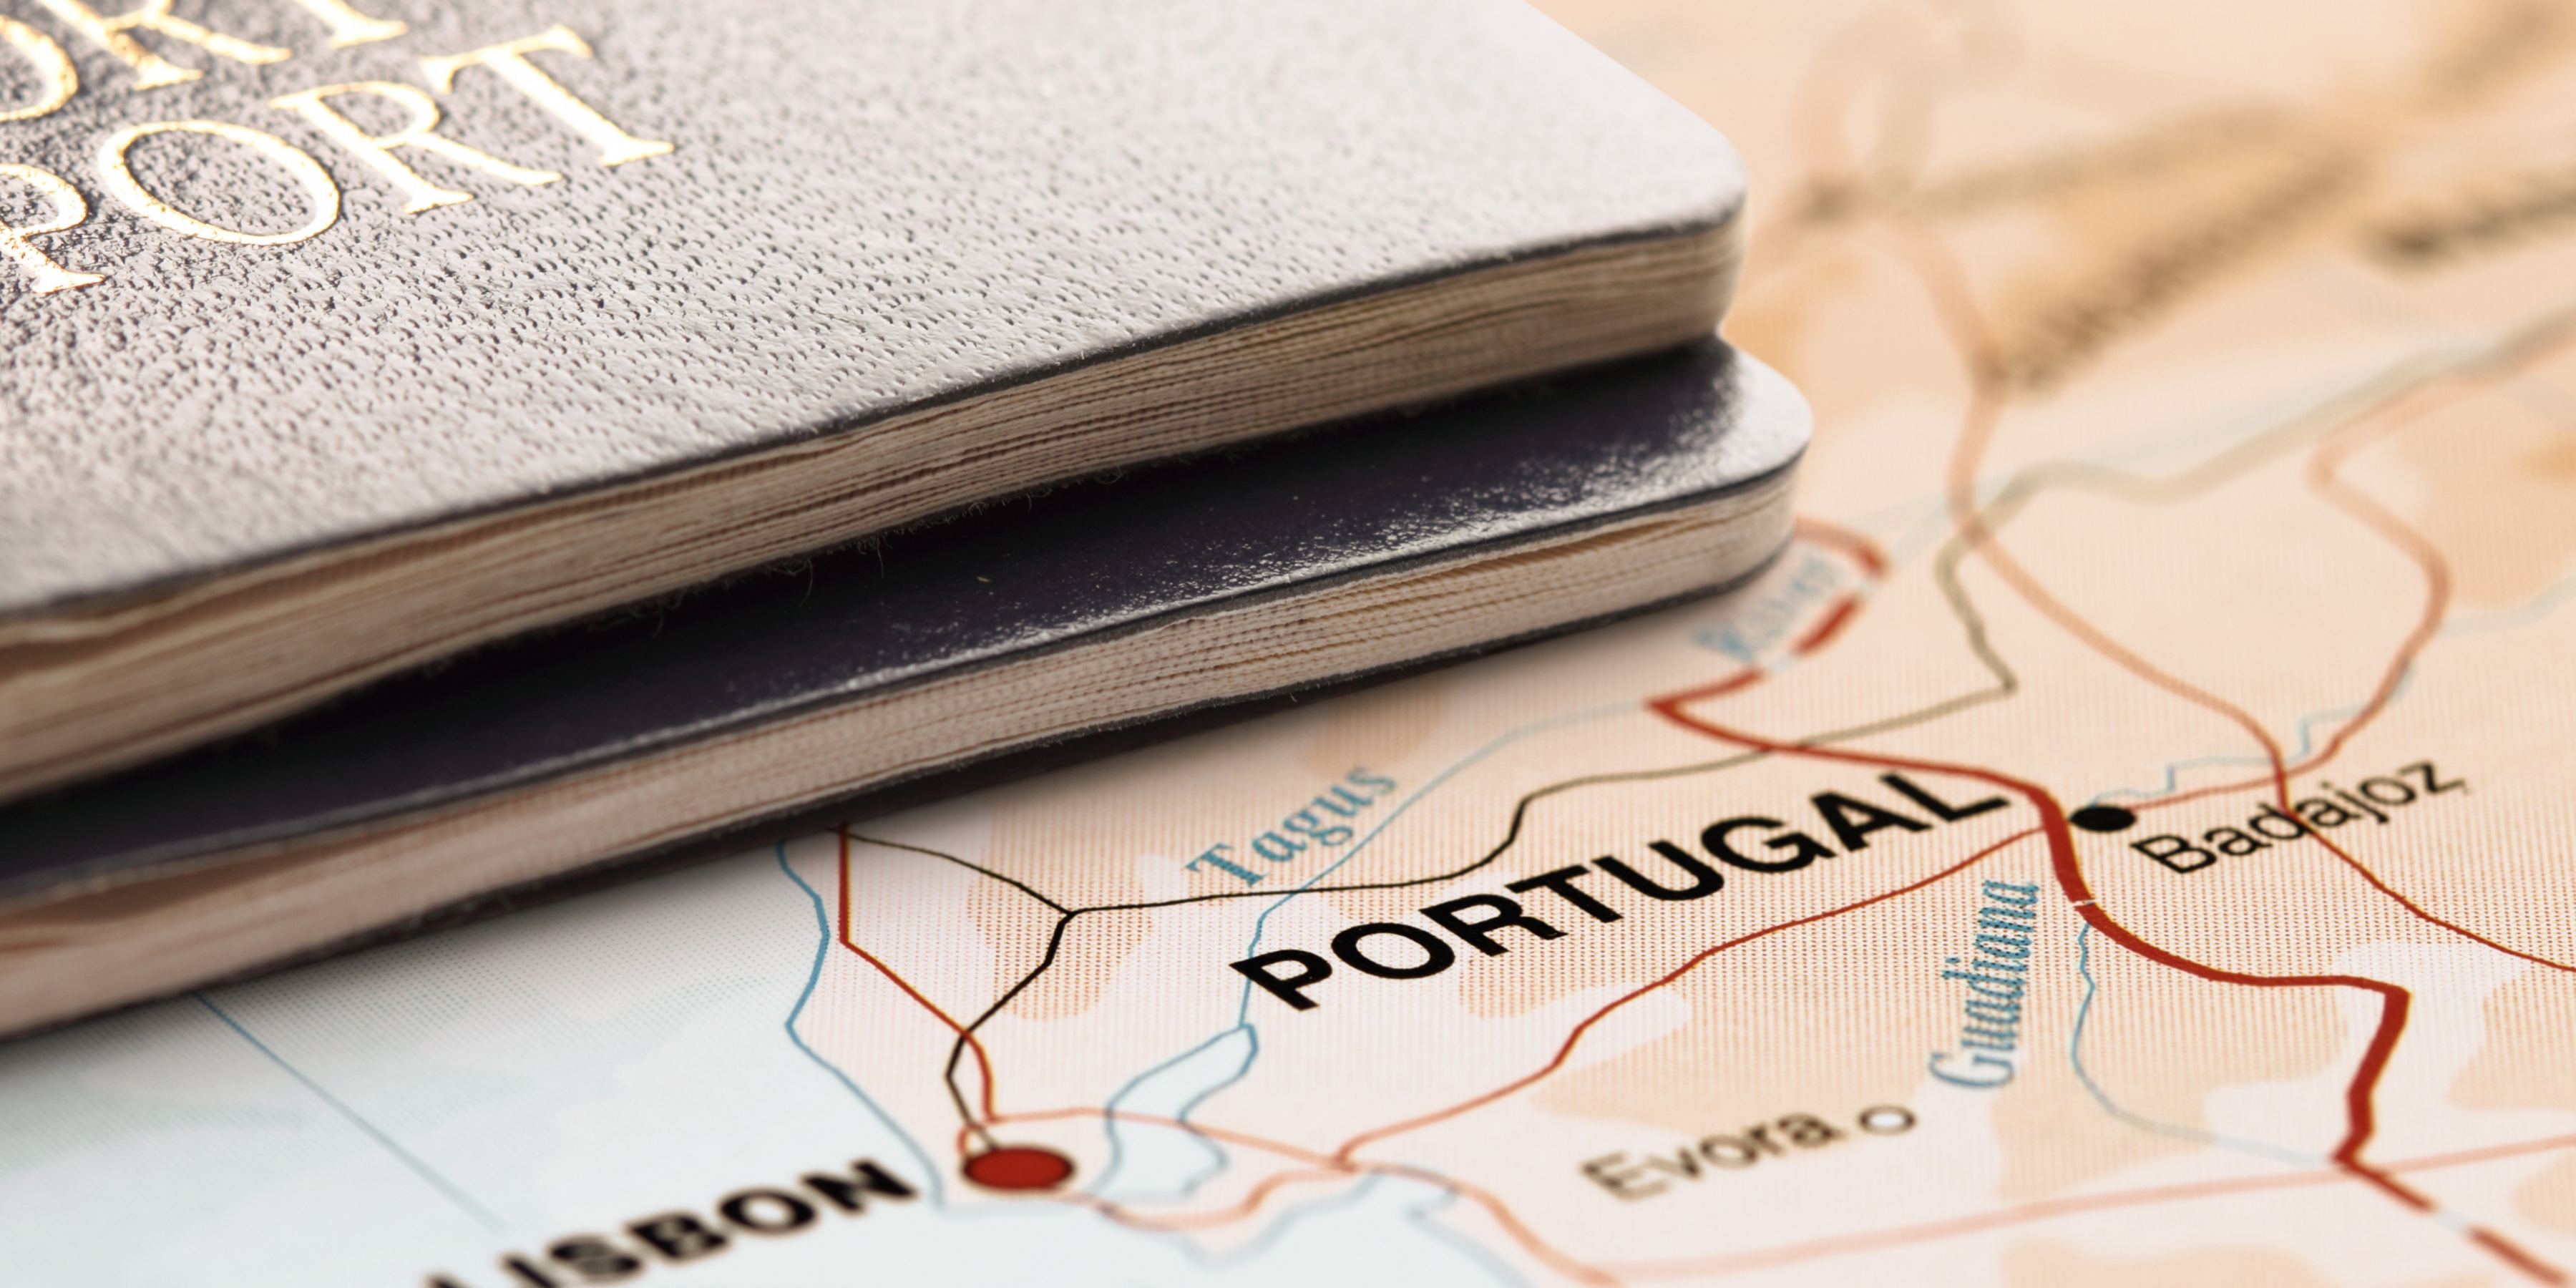 Vistos de Residência para Portugal - Longa duração